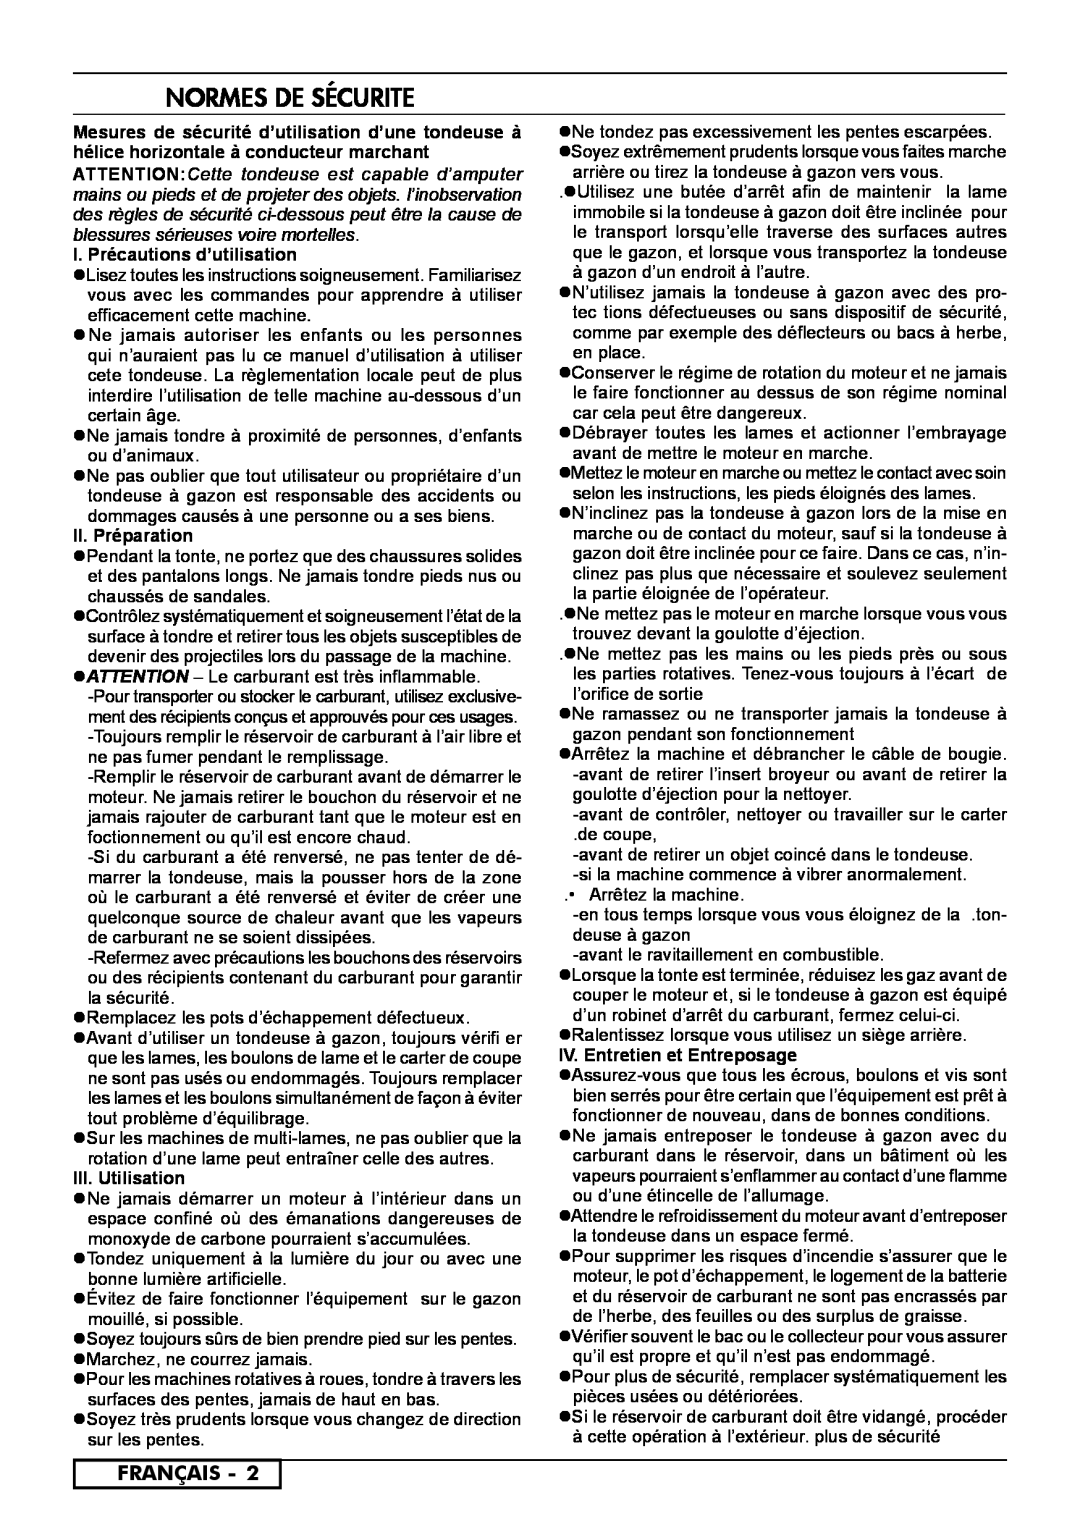 McCulloch 966531801 Normes De Sécurite, Français, I. Précautions d’utilisation, II. Préparation, III. Utilisation 